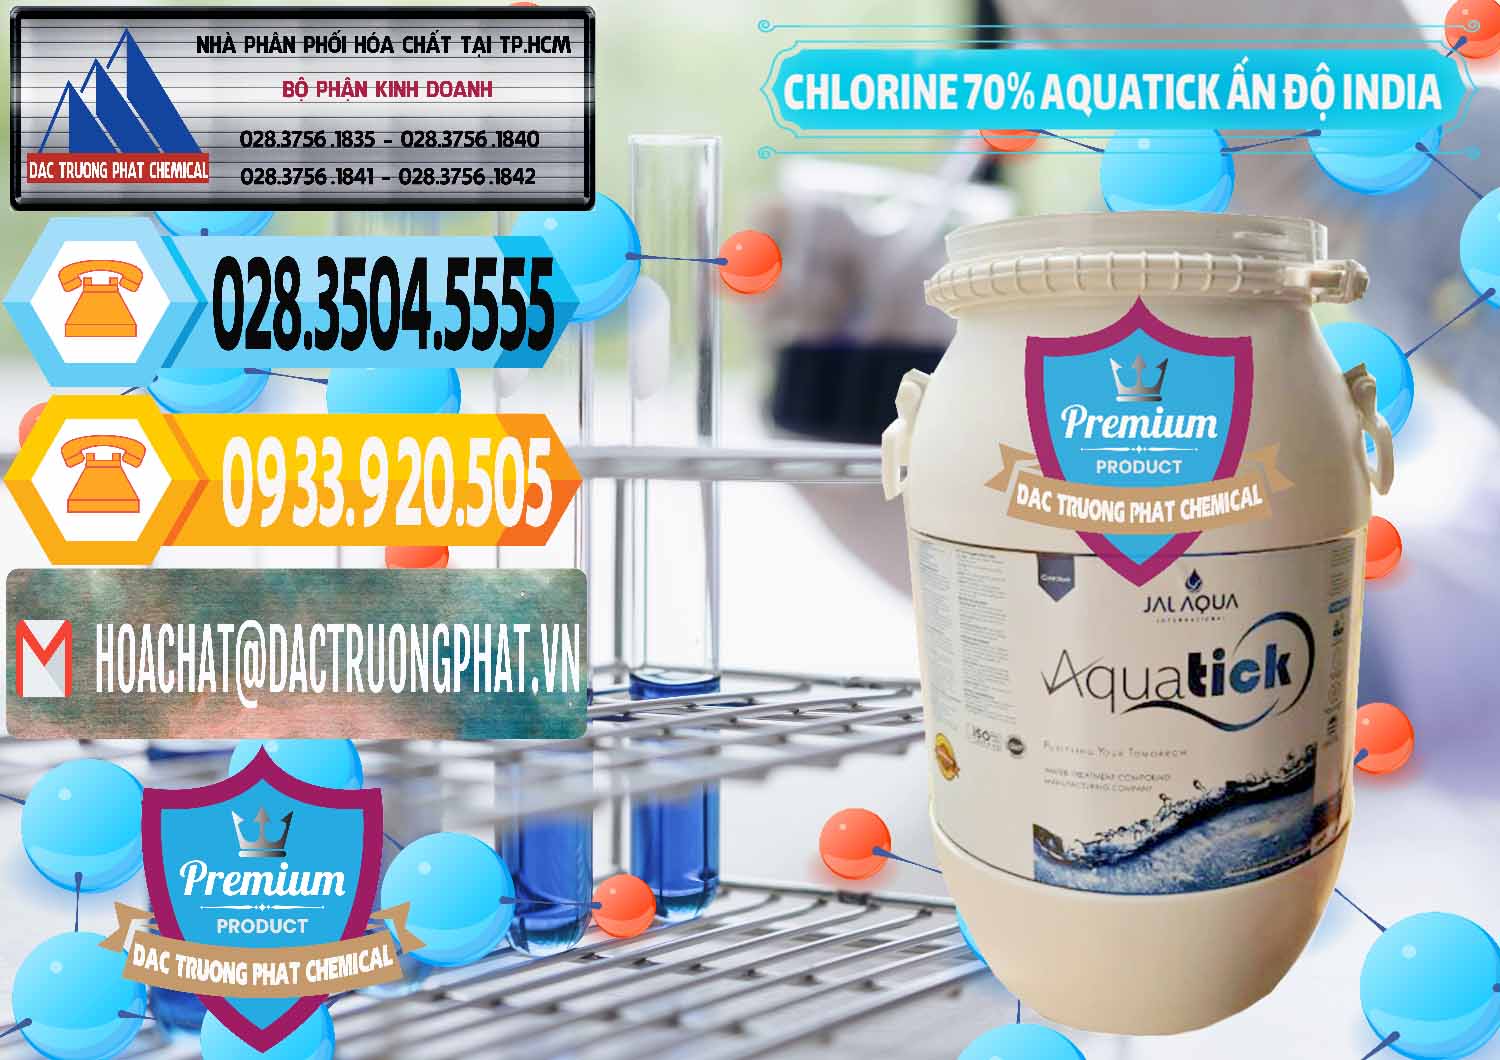 Cty cung ứng _ bán Chlorine – Clorin 70% Aquatick Jal Aqua Ấn Độ India - 0215 - Chuyên nhập khẩu ( phân phối ) hóa chất tại TP.HCM - hoachattayrua.net